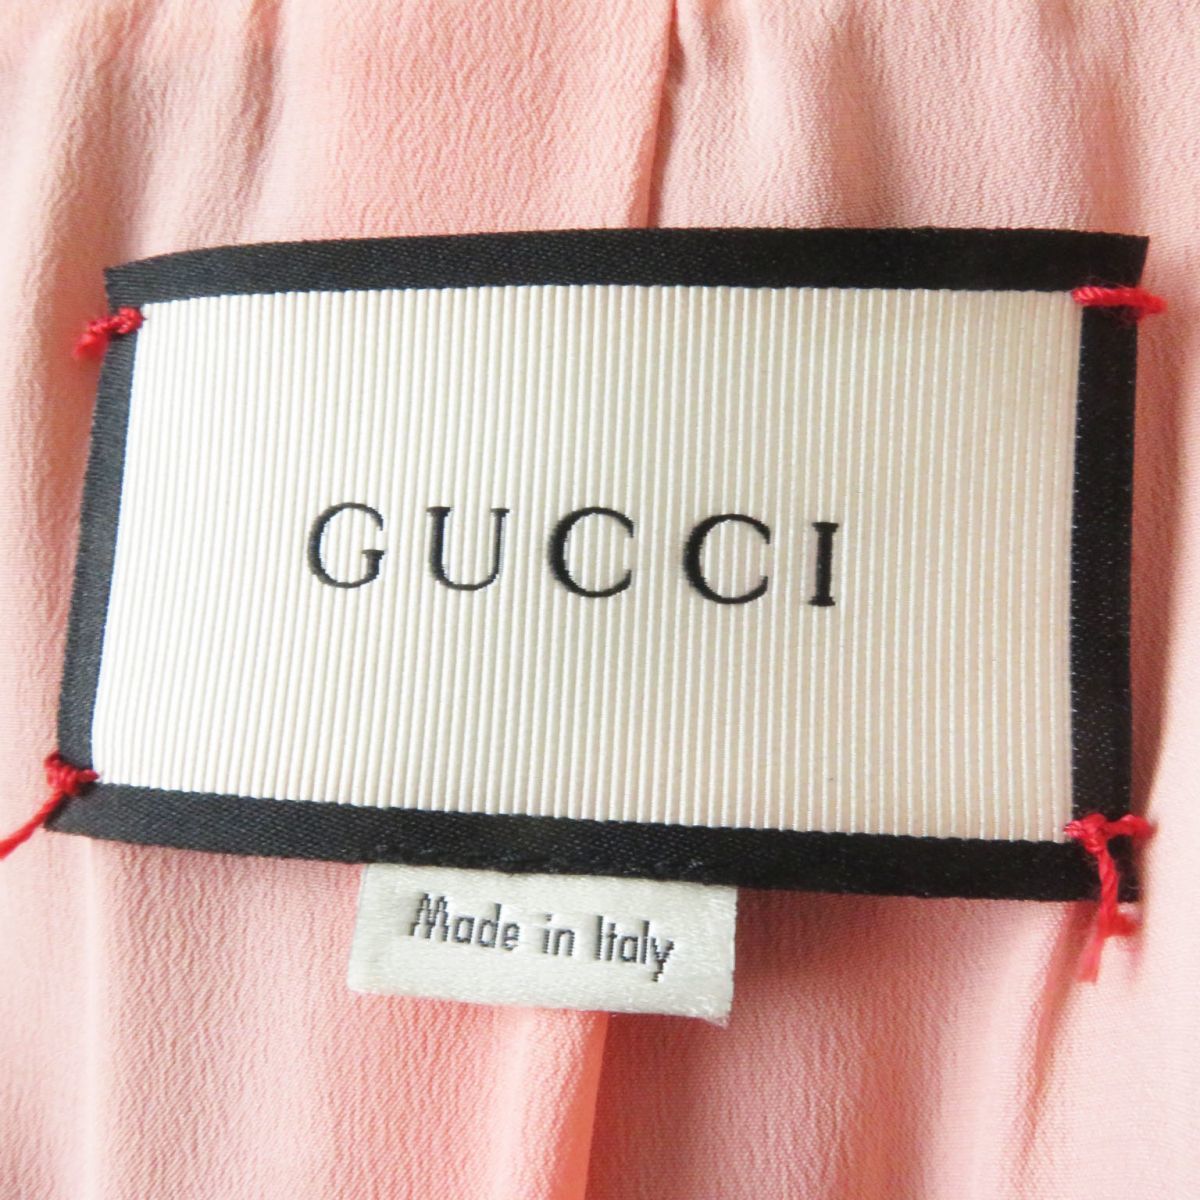  превосходный товар * стандартный товар Gucci 448610 женский Glo gran web шея bow Thai есть длинный шерстяное пальто Inter locking G кнопка чёрный 40 сделано в Италии 